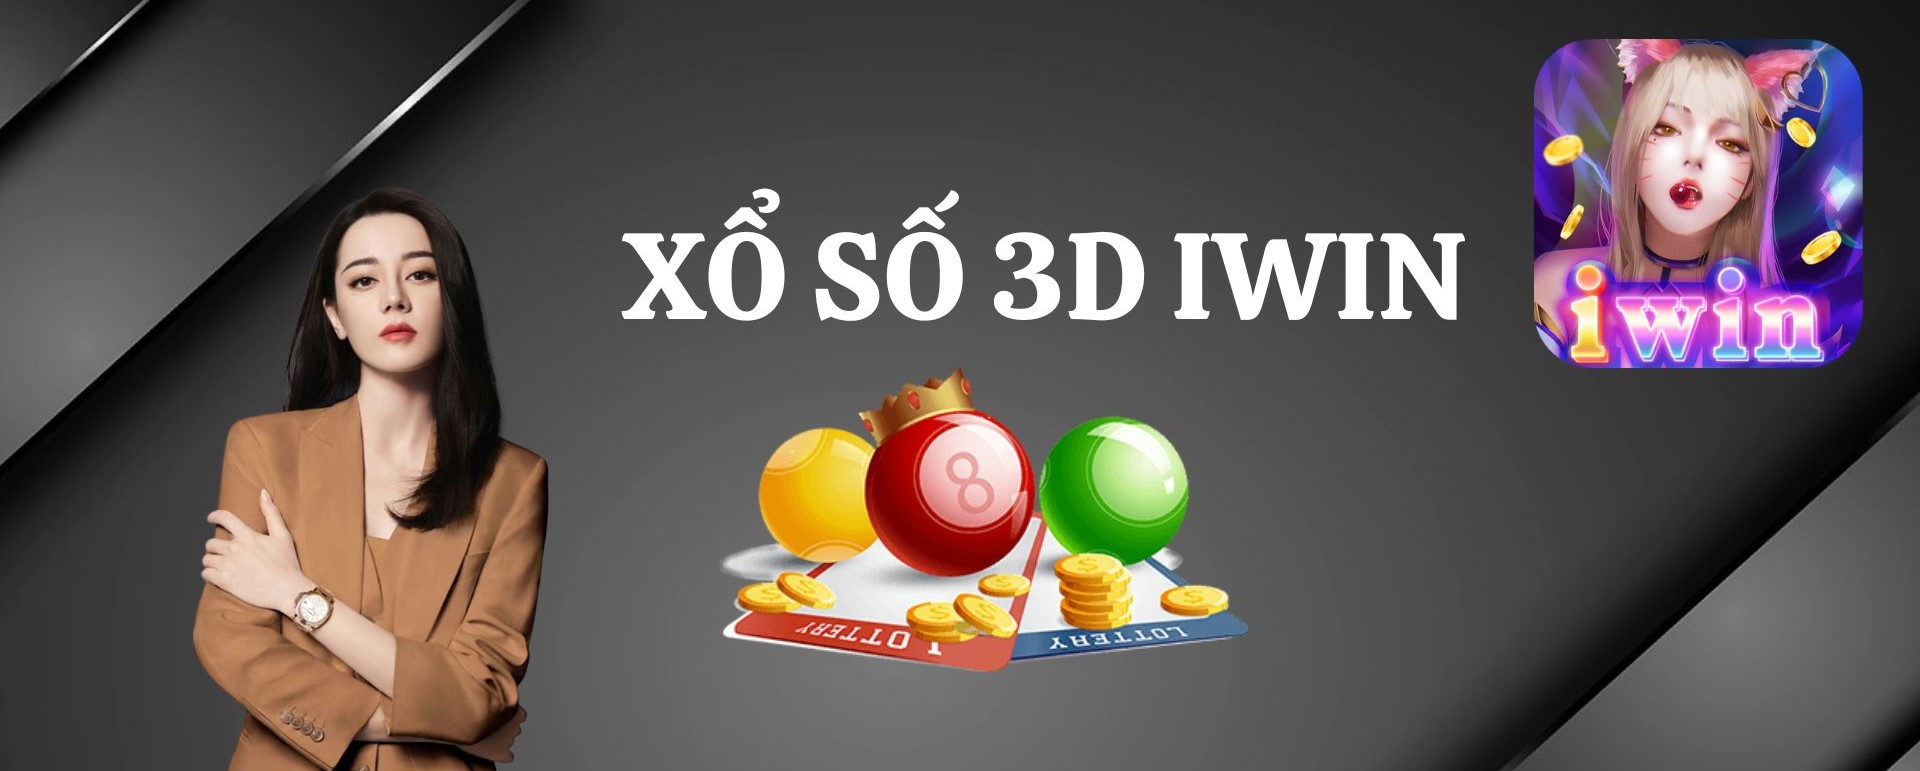 Cá cược xổ số 3D tại IWIN